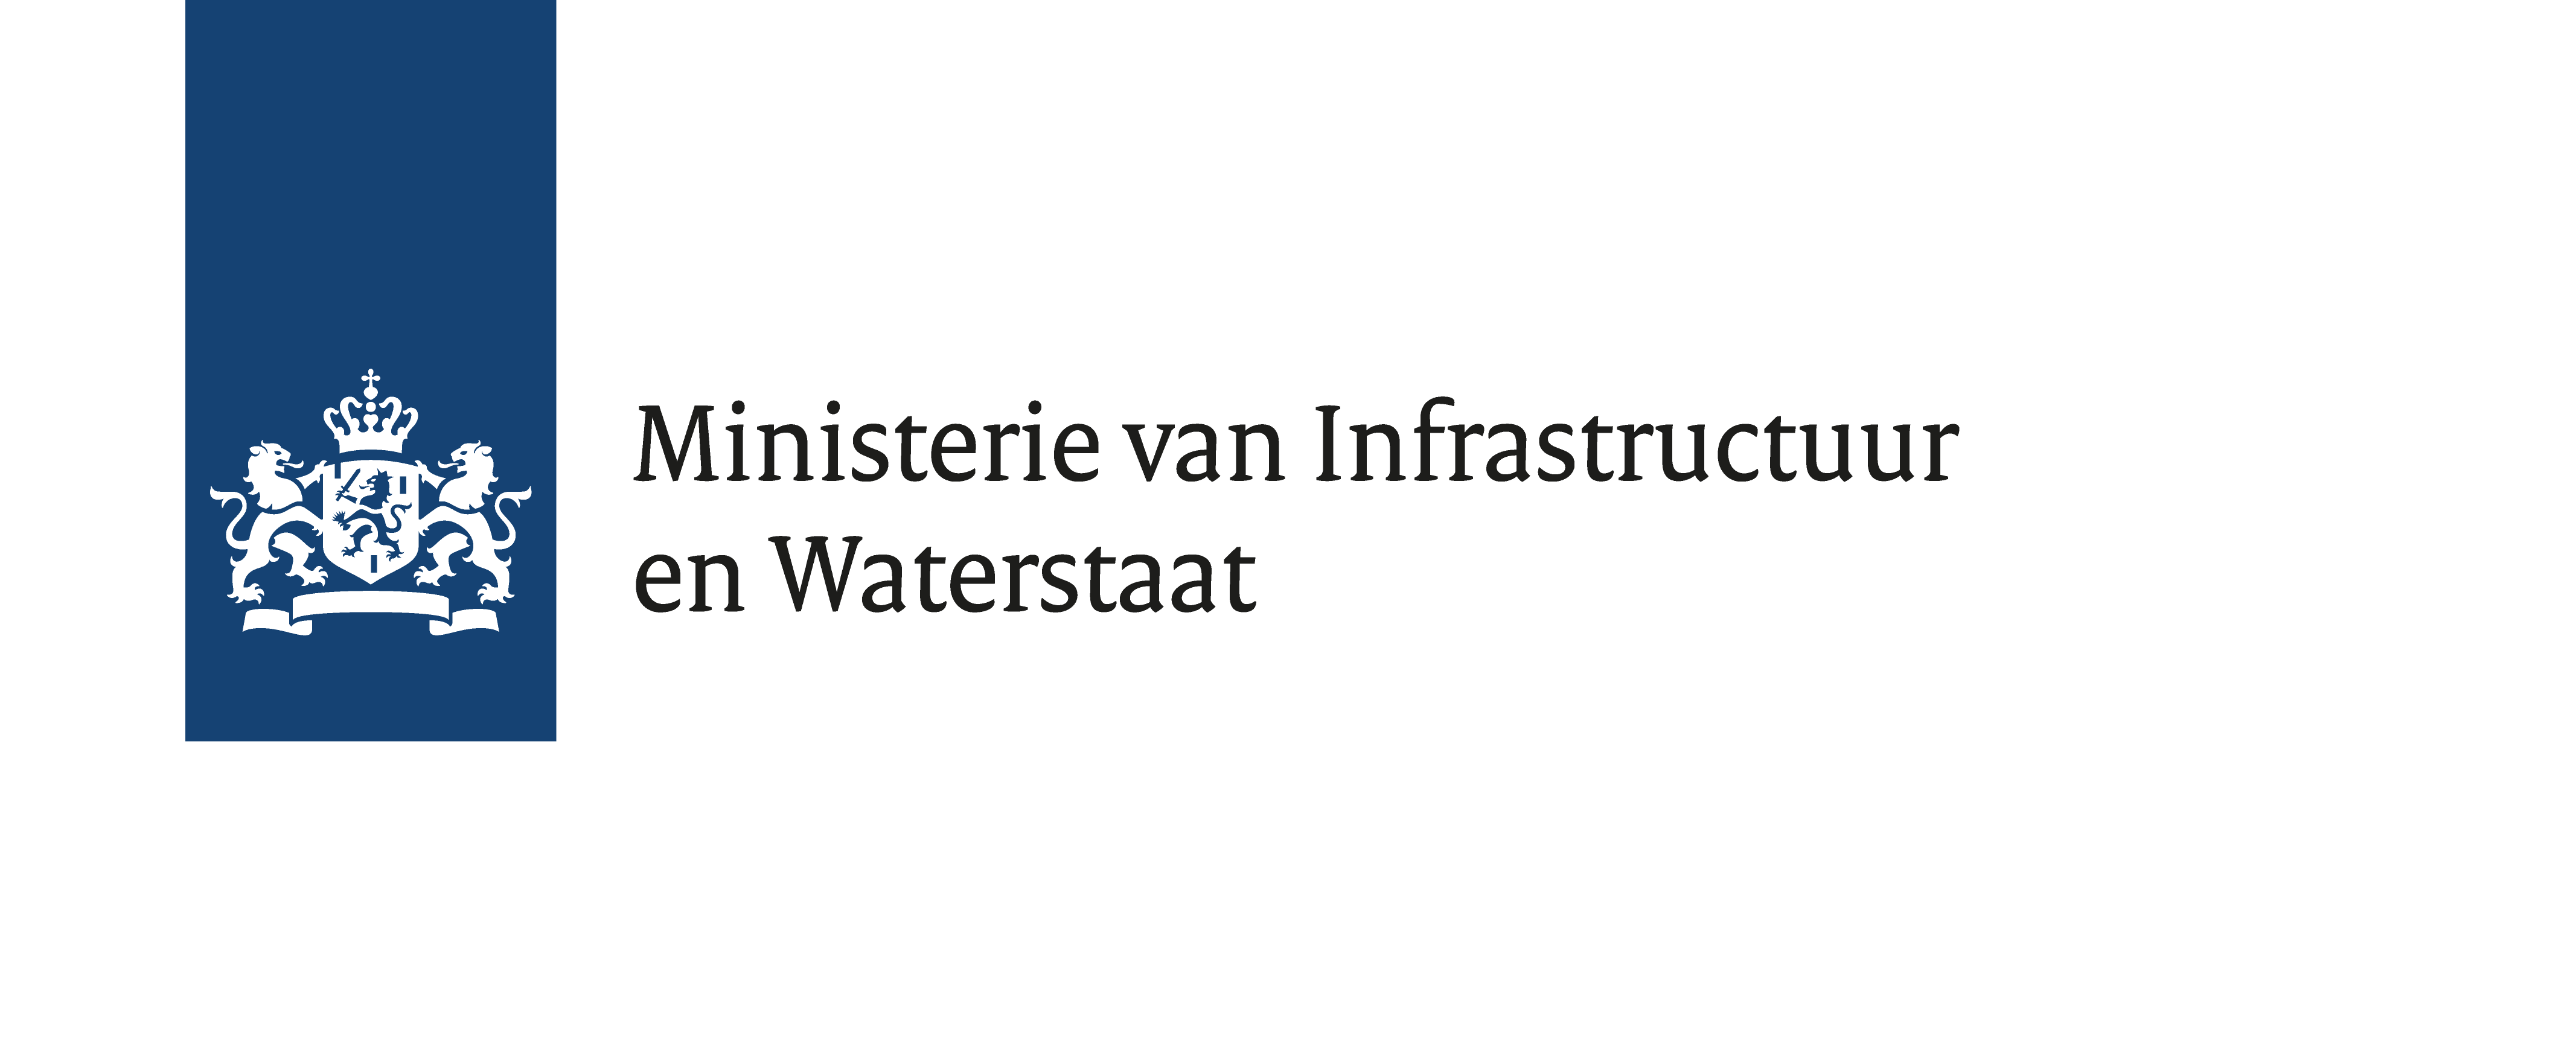 Ministerie van Infrastructuur en Waterstaat 2